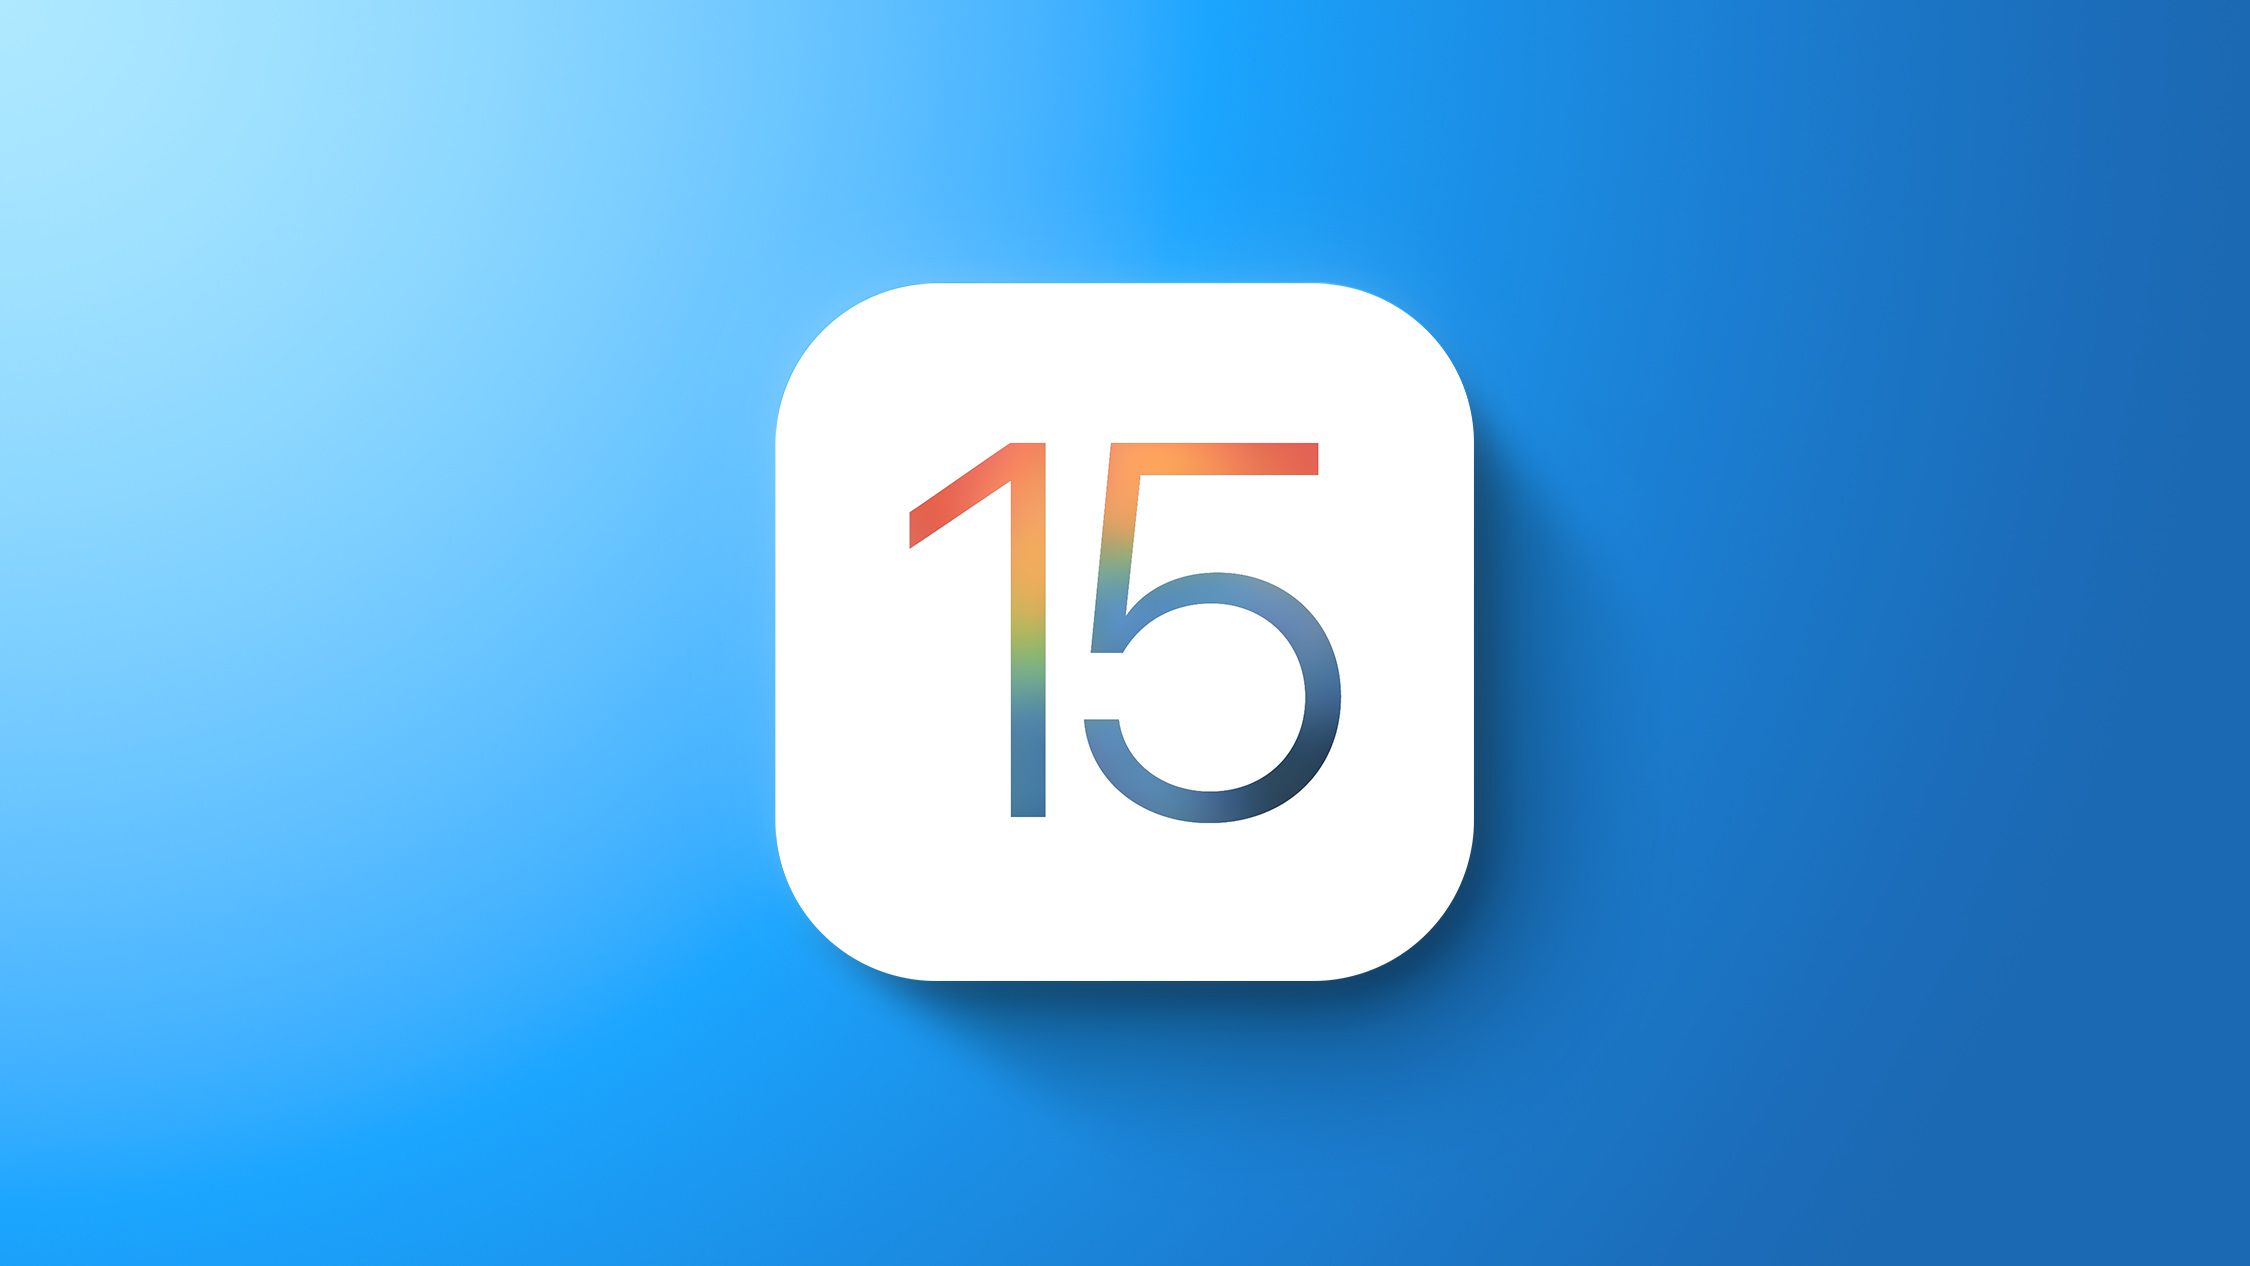 Apple lanza iOS 15.3.1 y iPadOS 15.3.1 con actualizaciones de seguridad y corrección de errores